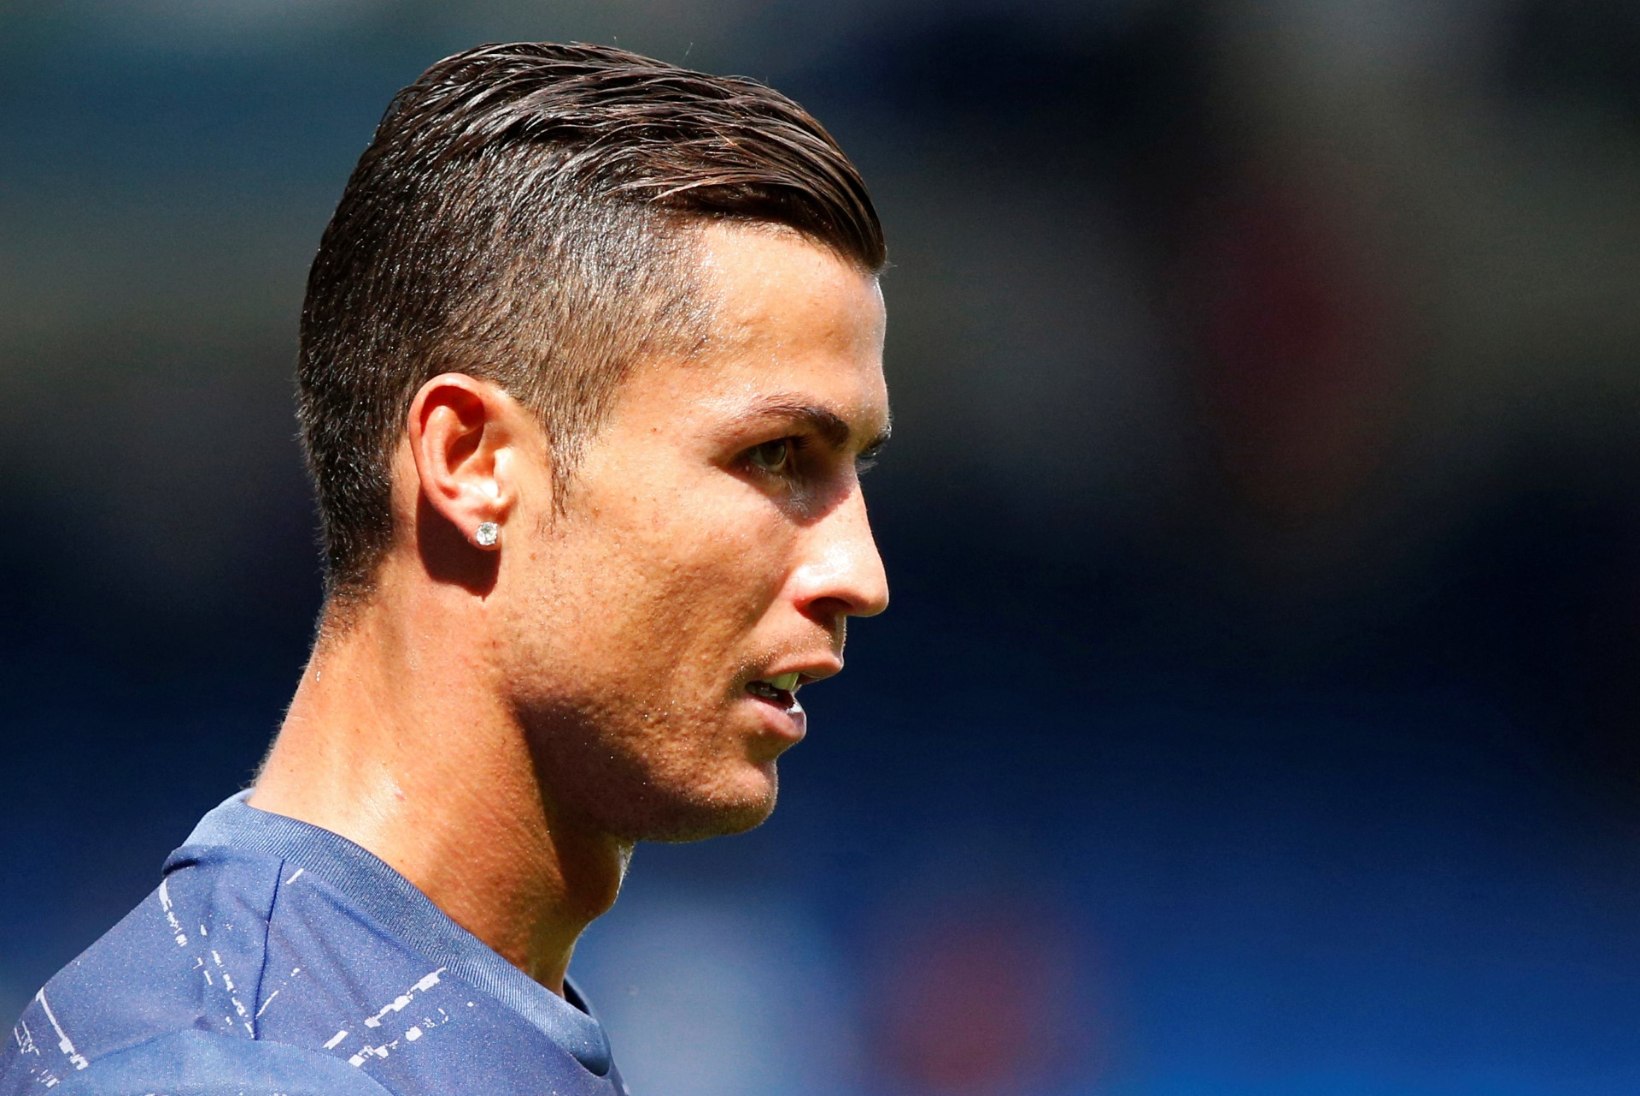 FOTOD | Ronaldo lennukil murdus Barcelonas maandudes telik!